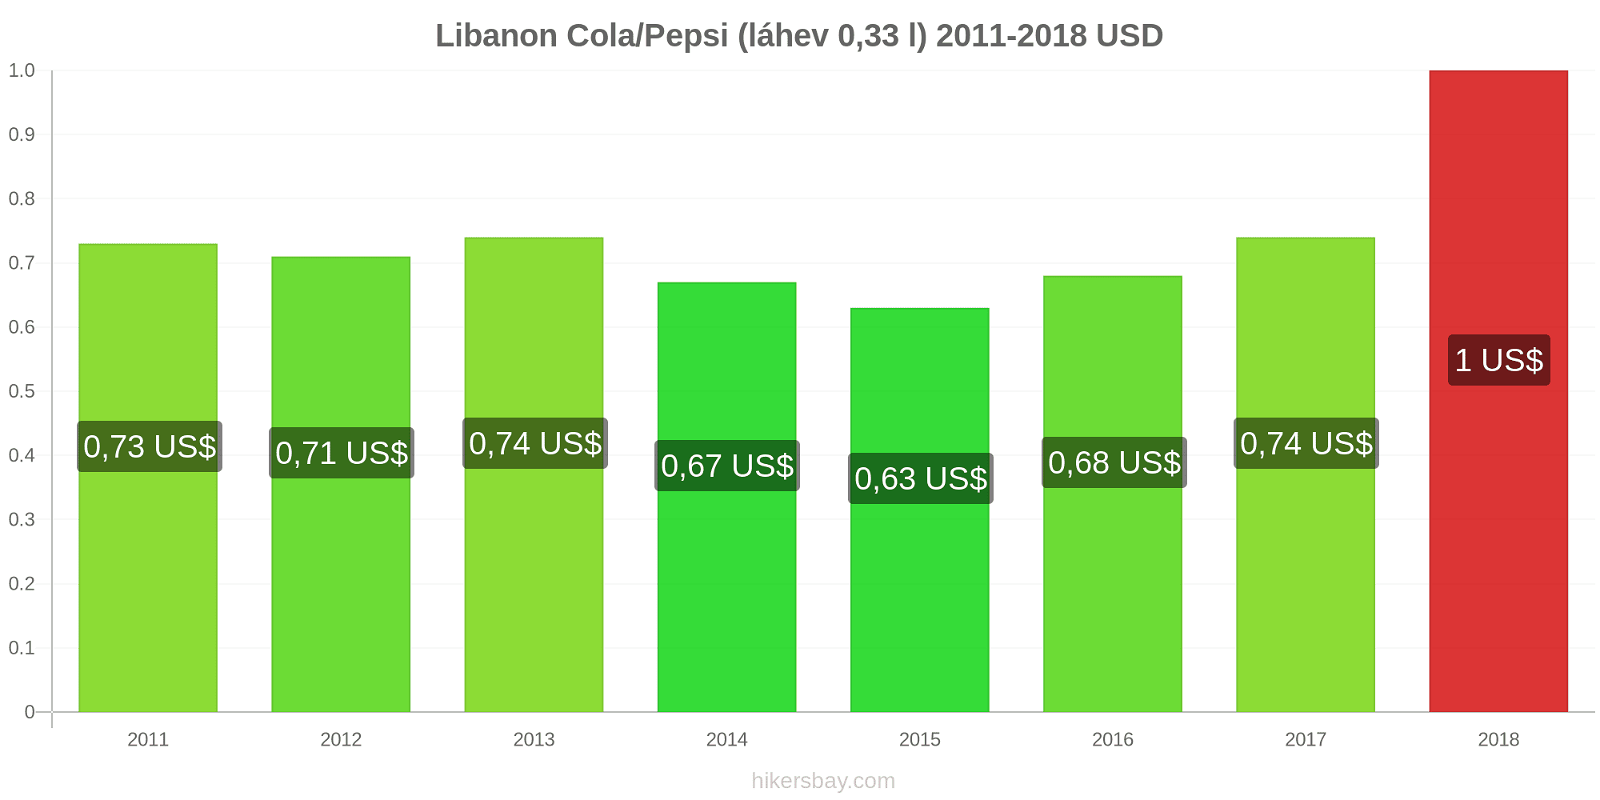 Libanon změny cen Coca-Cola/Pepsi (láhev 0.33 l) hikersbay.com